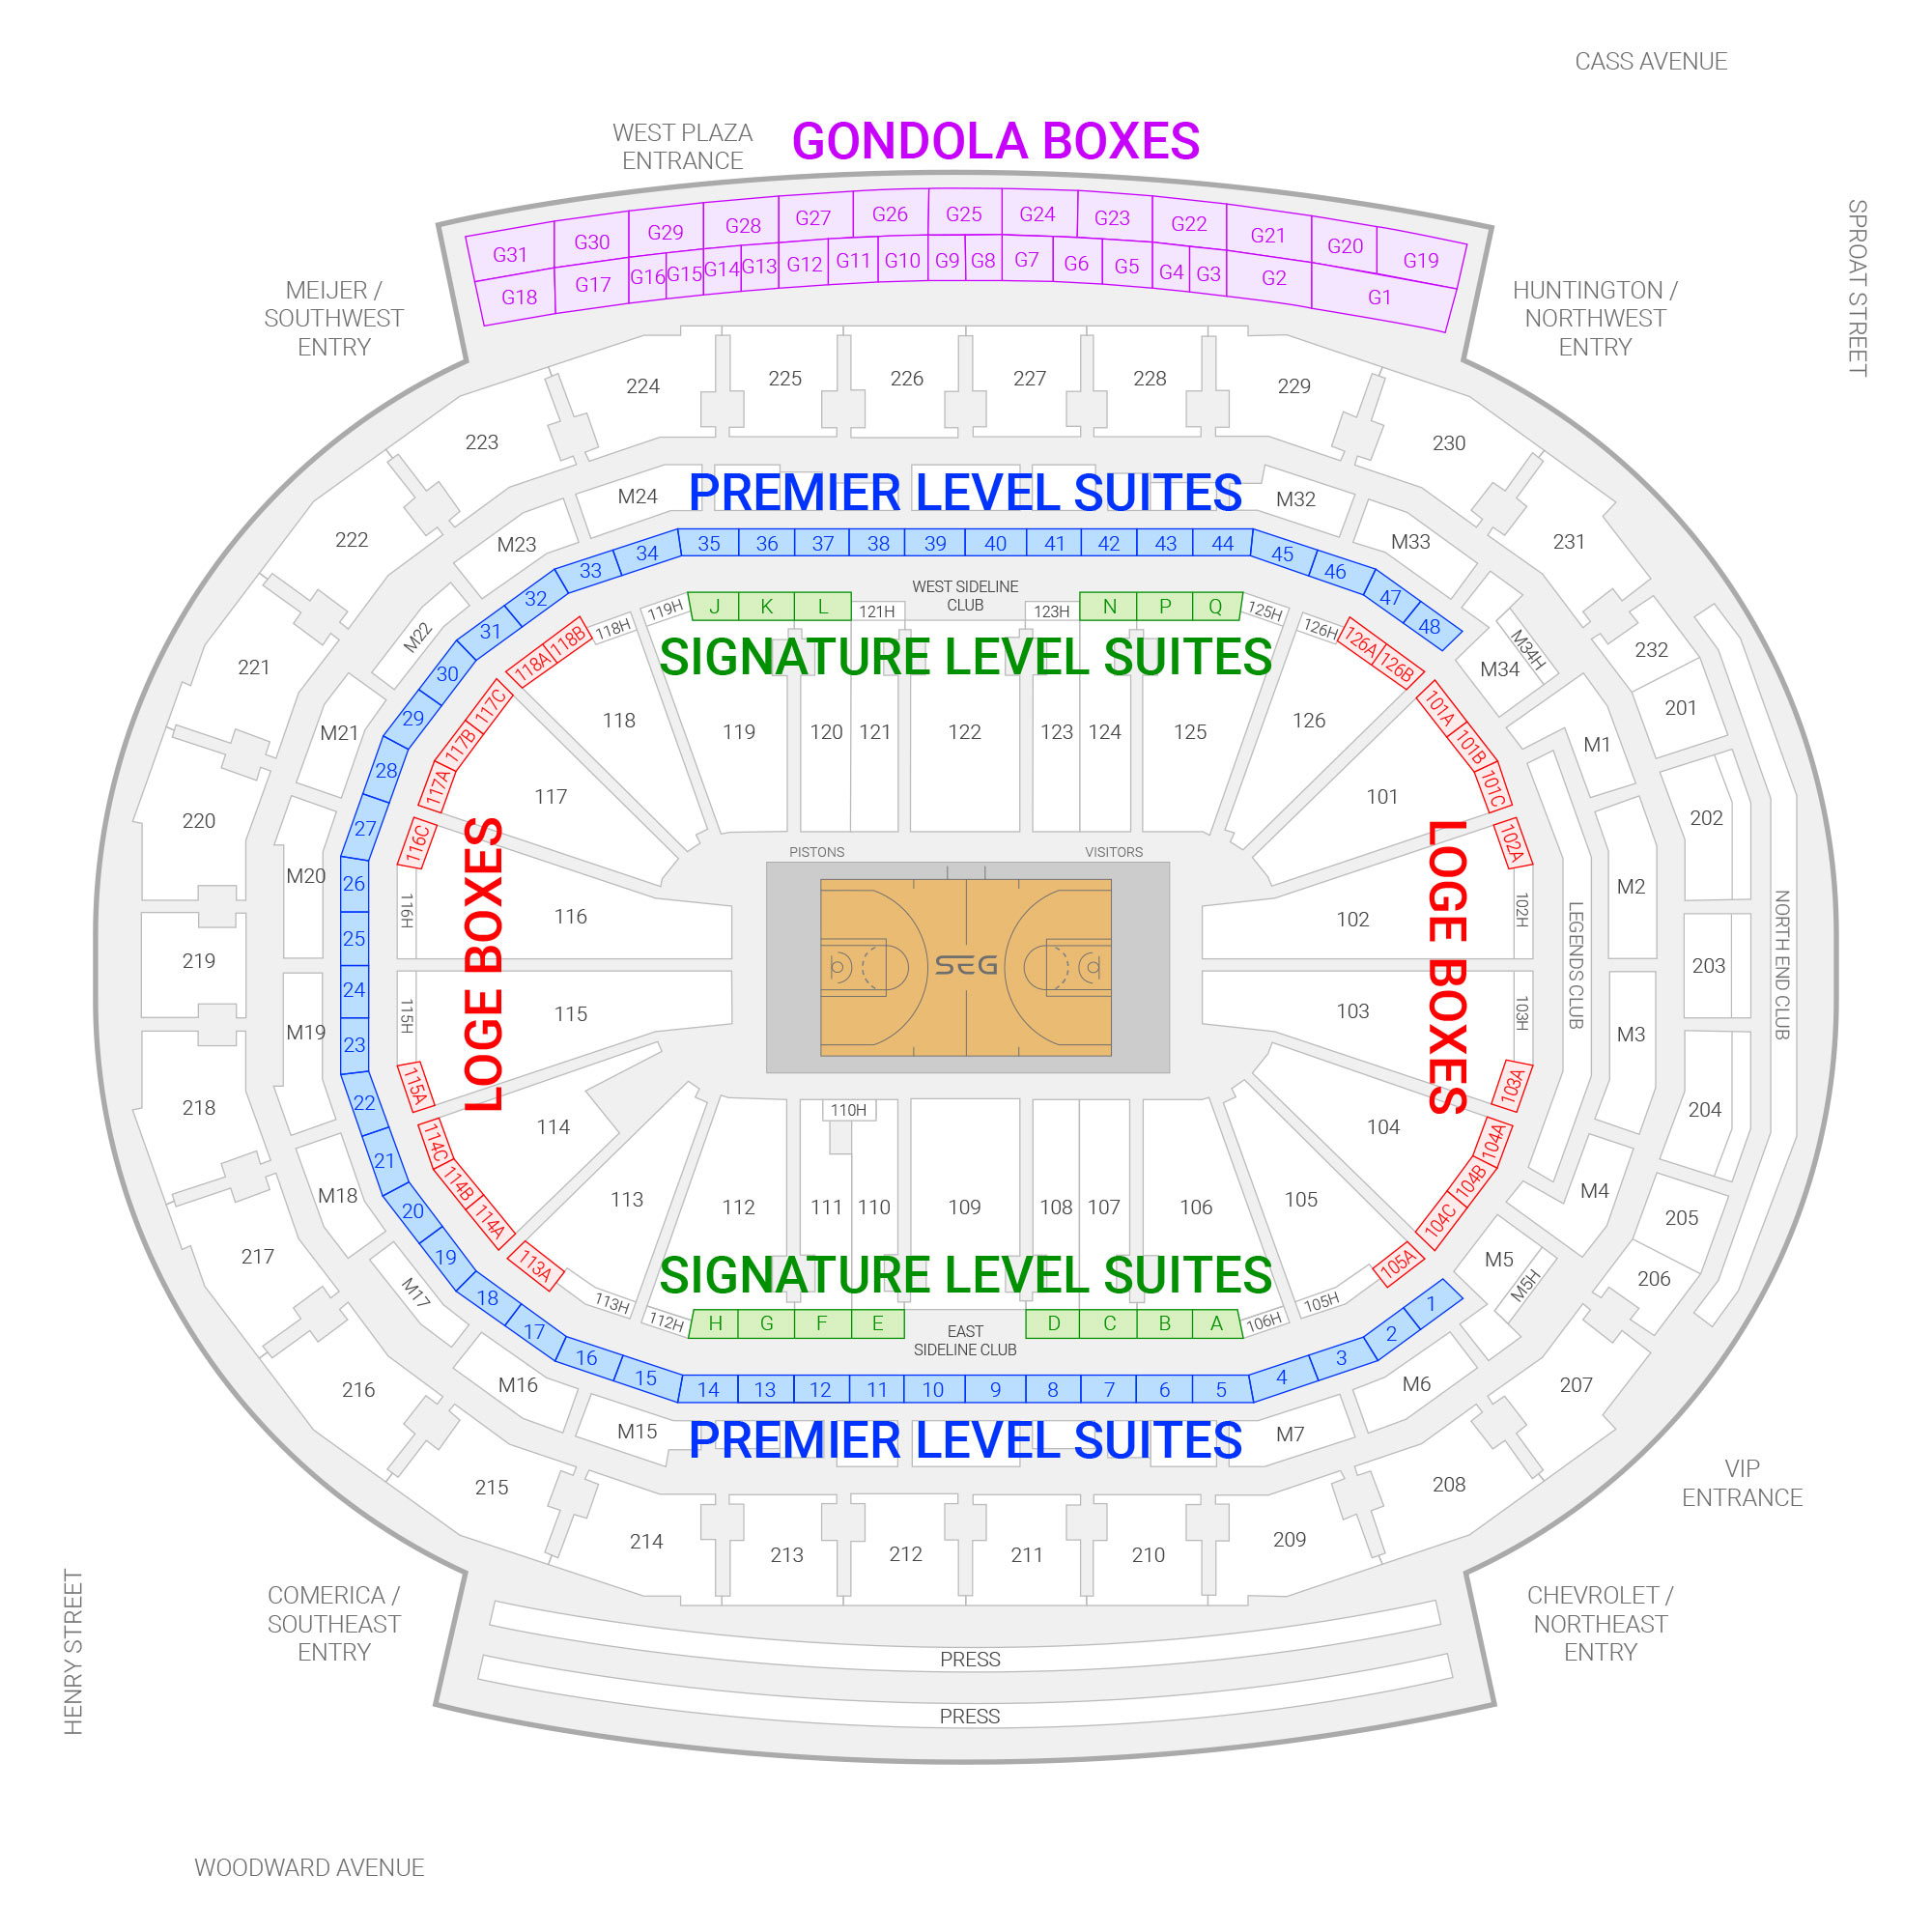 Little Caesars Arena adds NBA locker room, higher doorways for Pistons